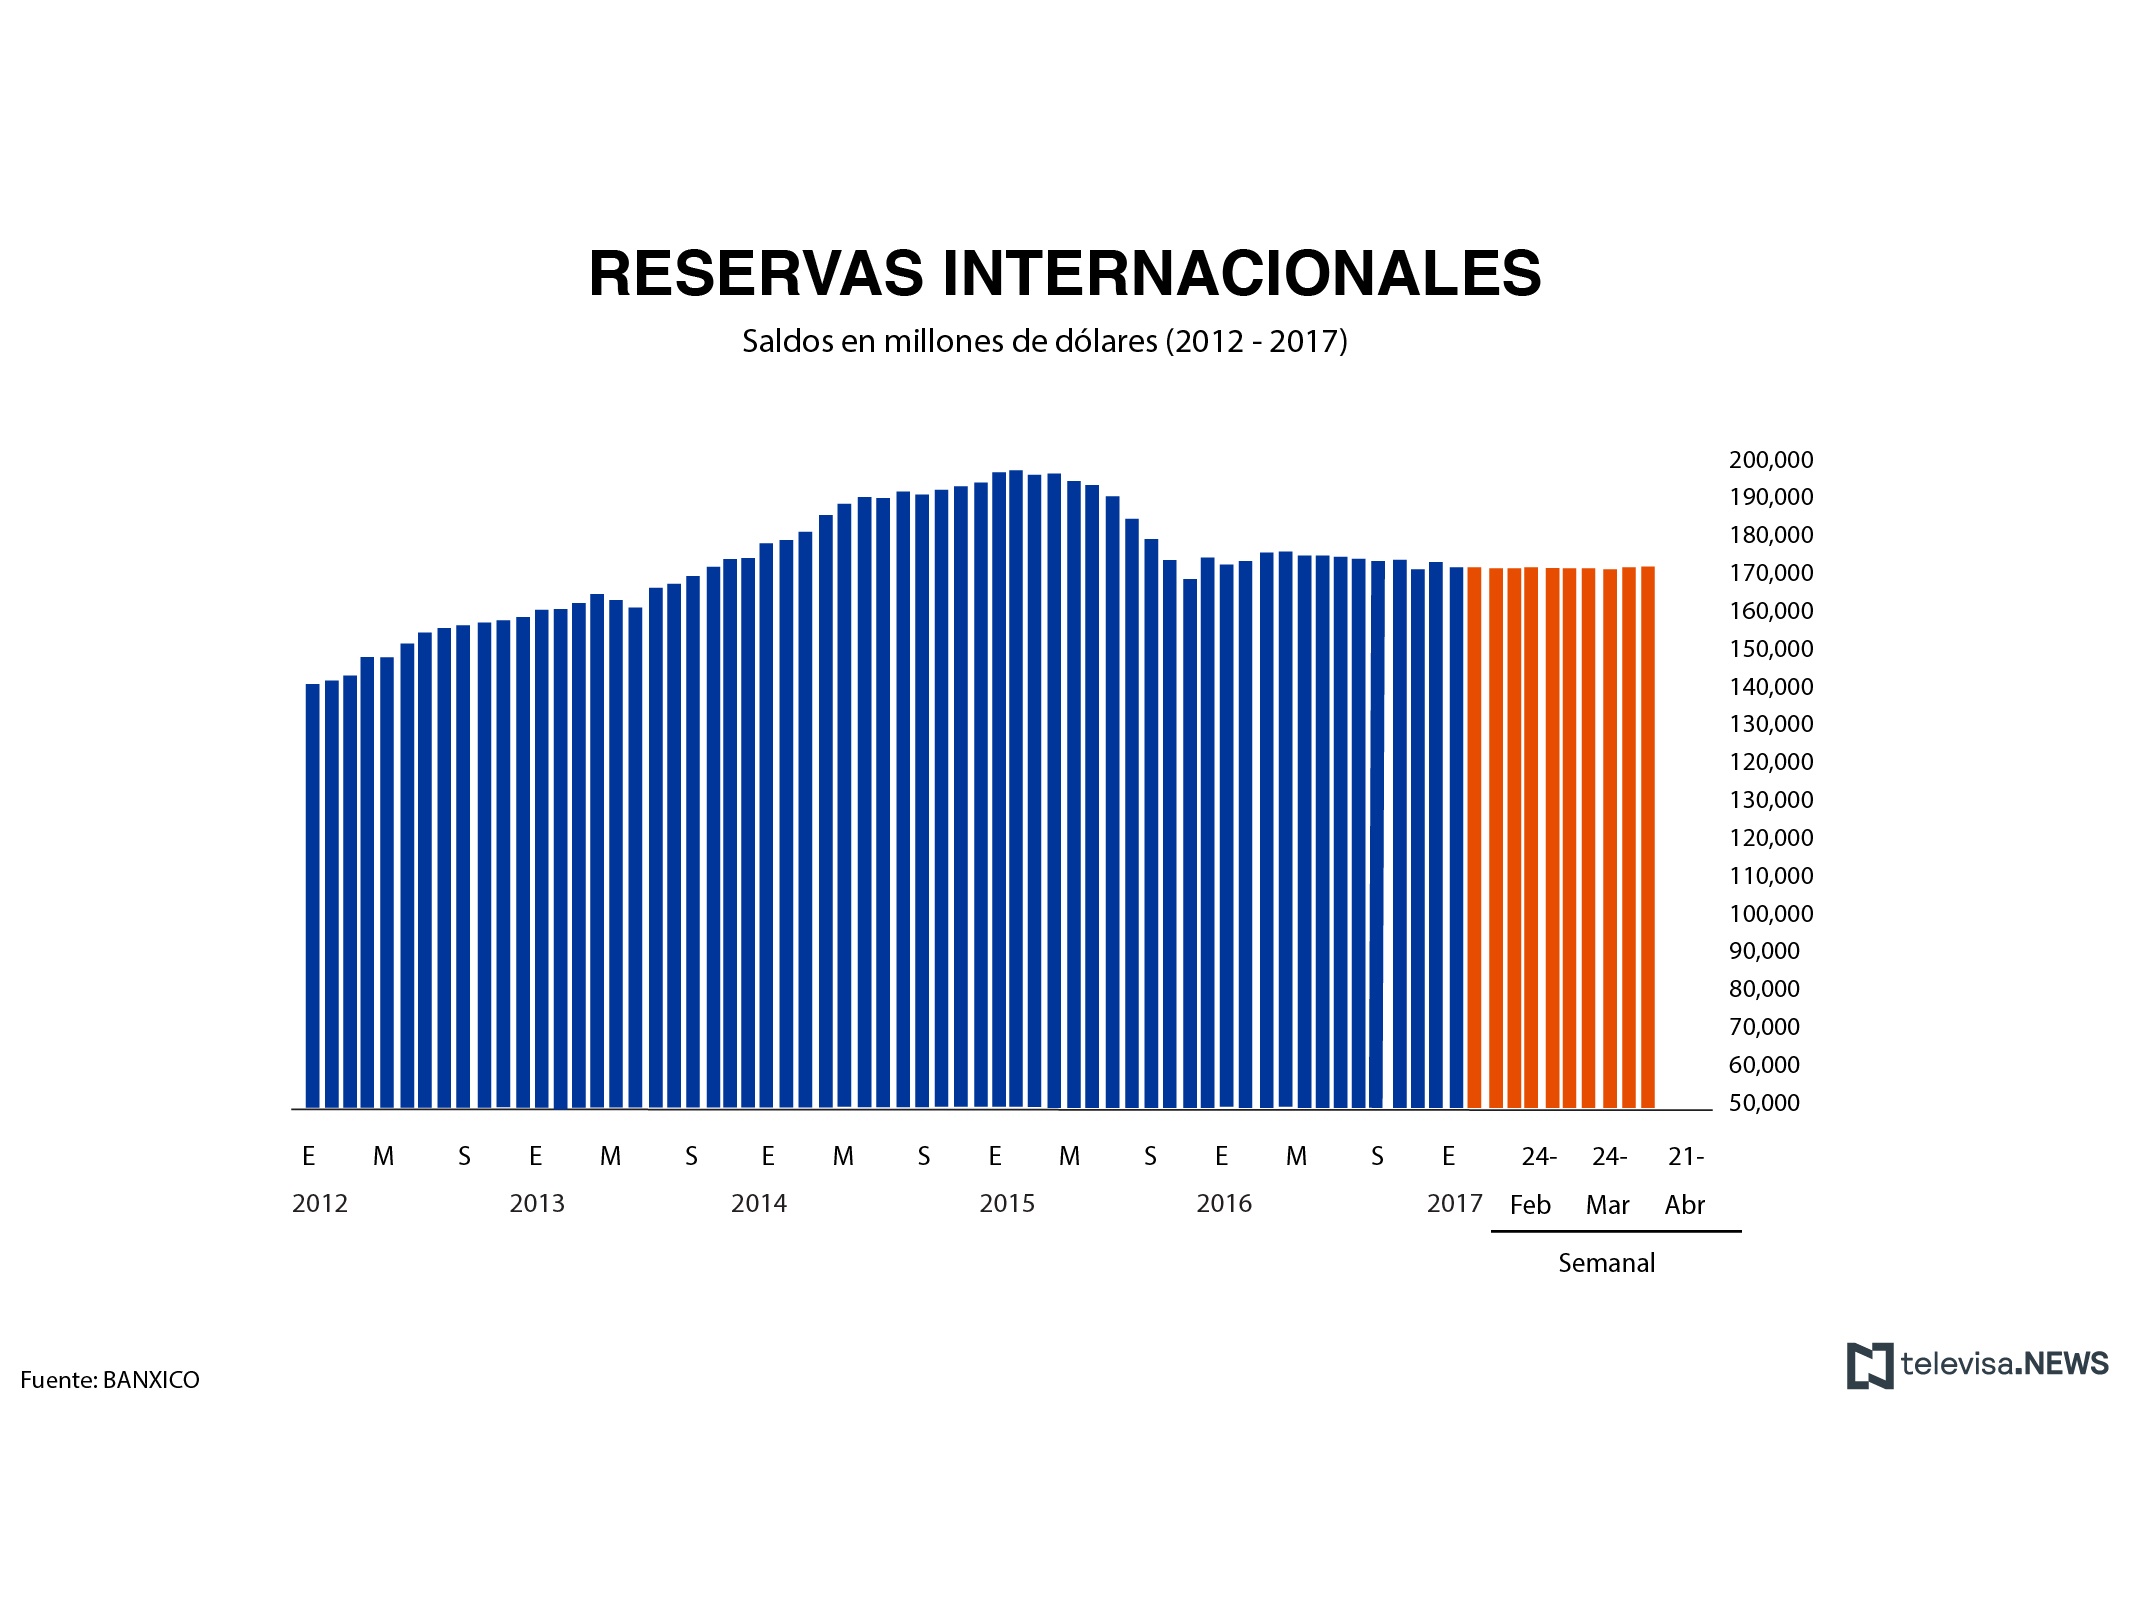 Reservas internacionales al 7 de abril, según el reporte de Banxico. (Noticieros Televisa)